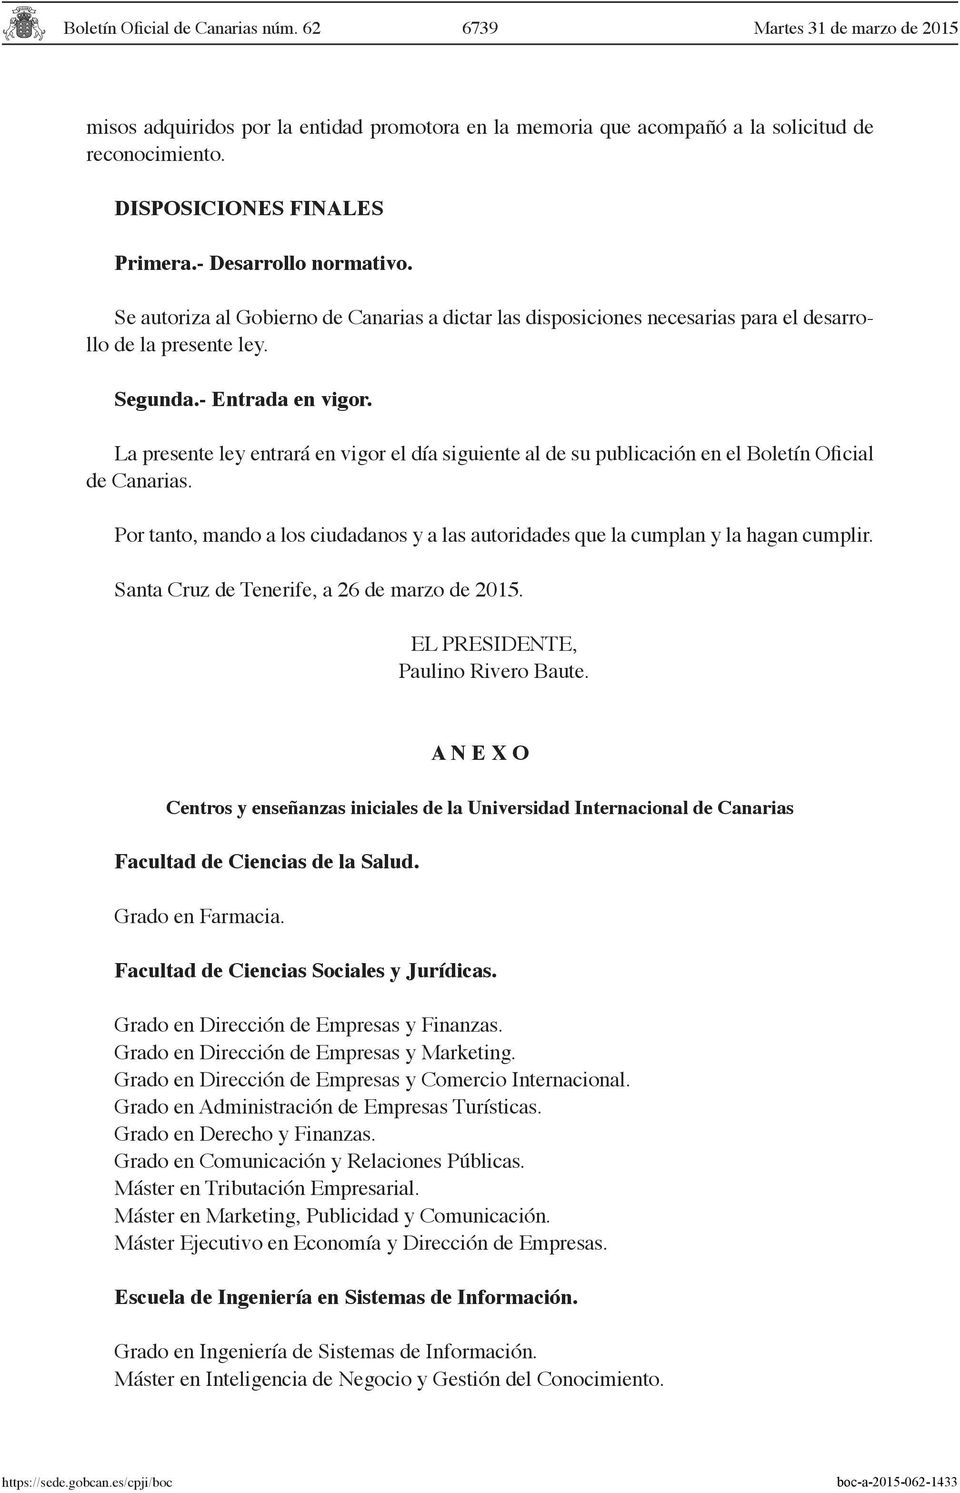 La presente ley entrará en vigor el día siguiente al de su publicación en el Boletín Oficial de Canarias. Por tanto, mando a los ciudadanos y a las autoridades que la cumplan y la hagan cumplir.